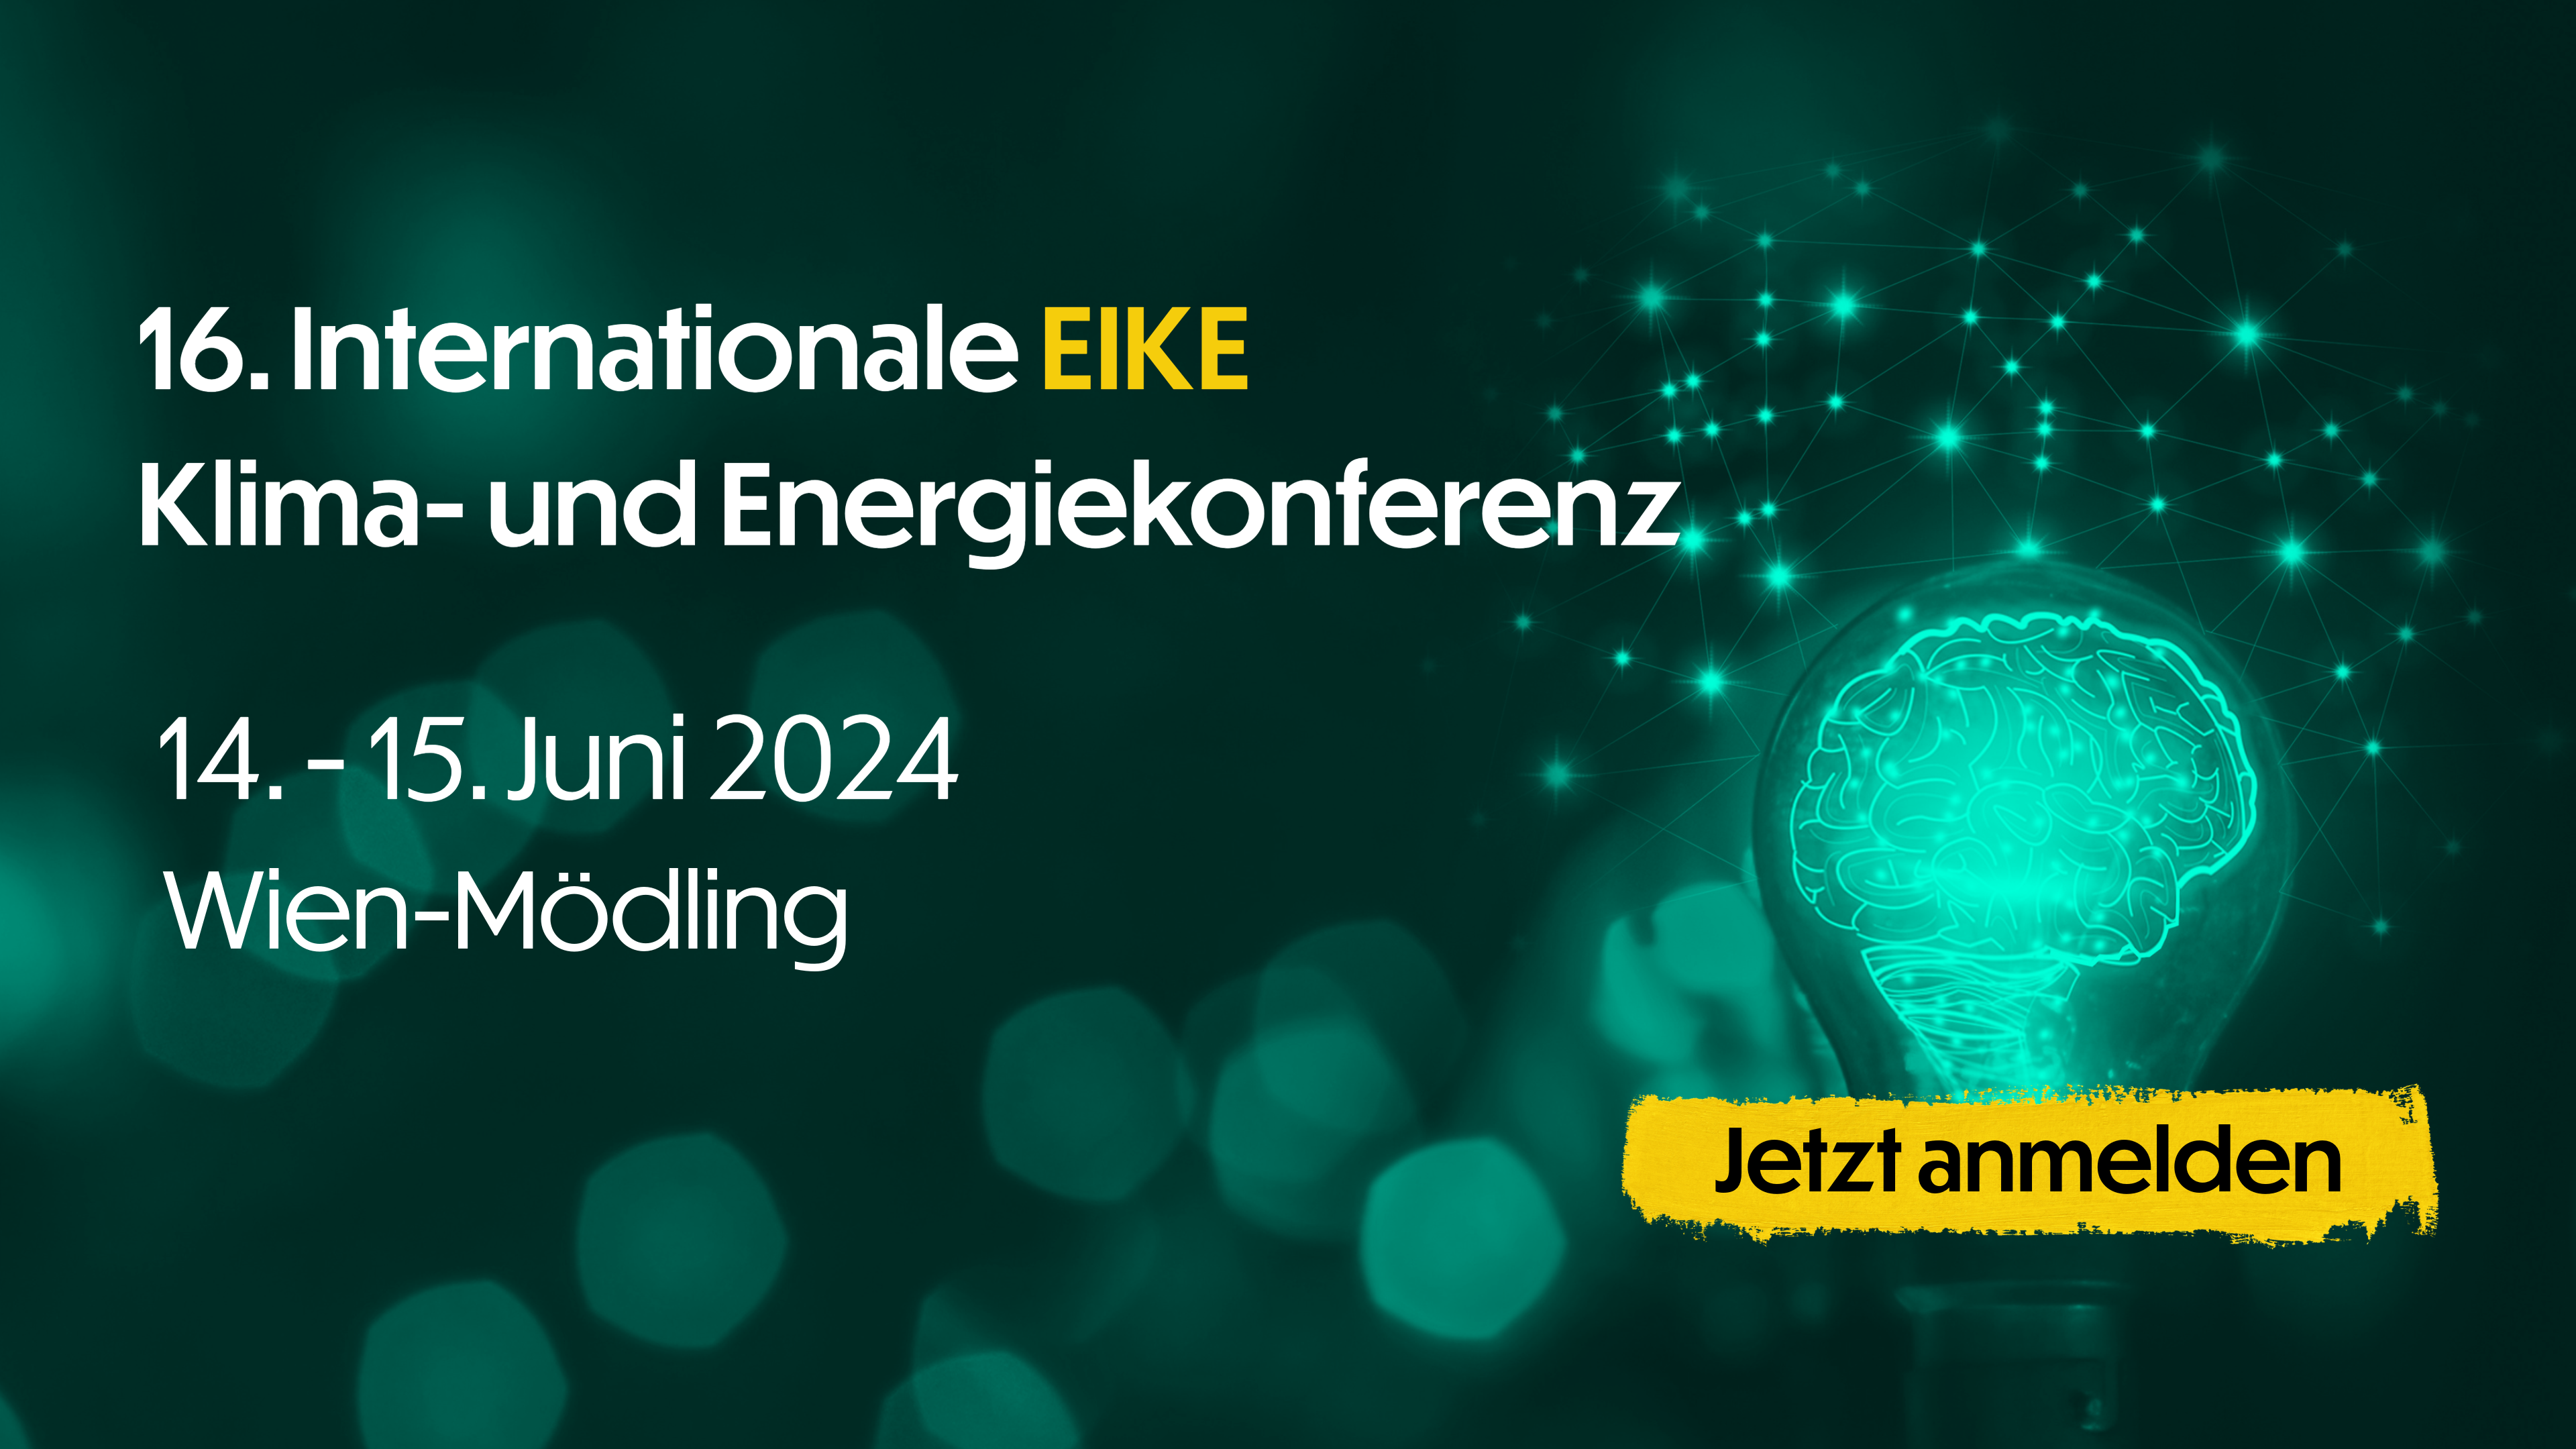 16. Internationale EIKE Klima- und Energiekonferenz, 14.-15. Juni, Wien